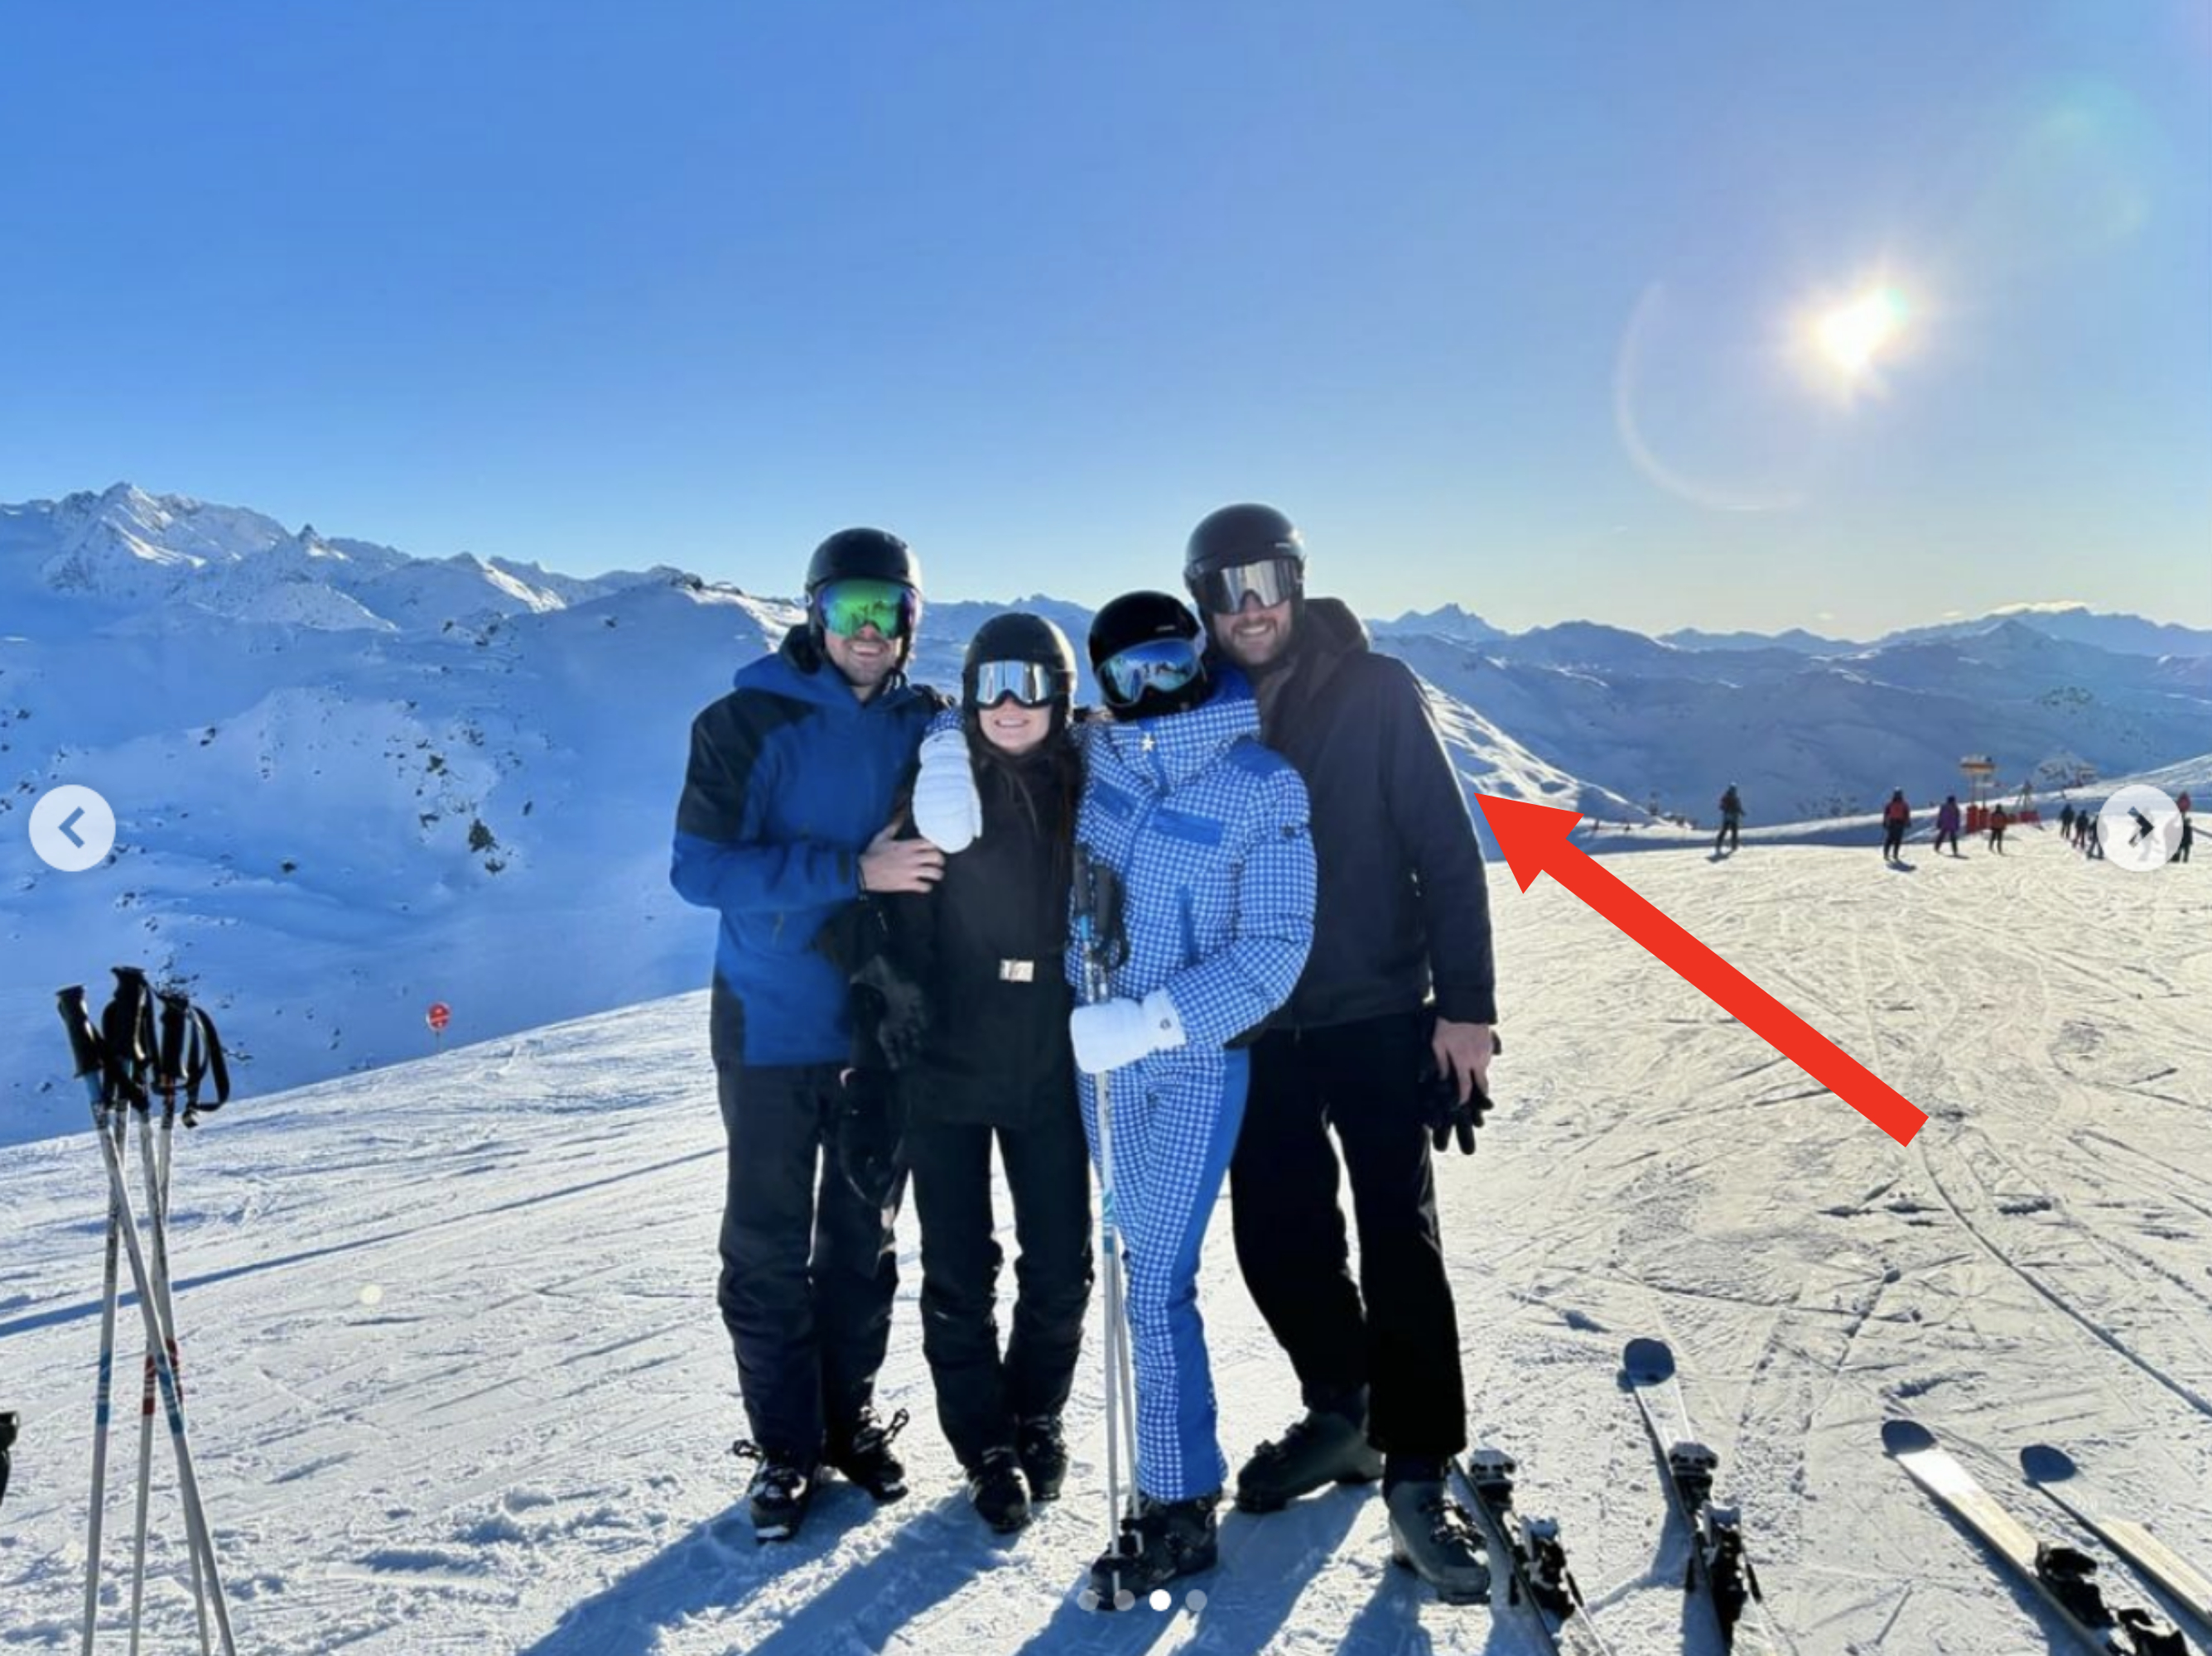 Arrow pointing to Peregrine Pearson on the ski slopes